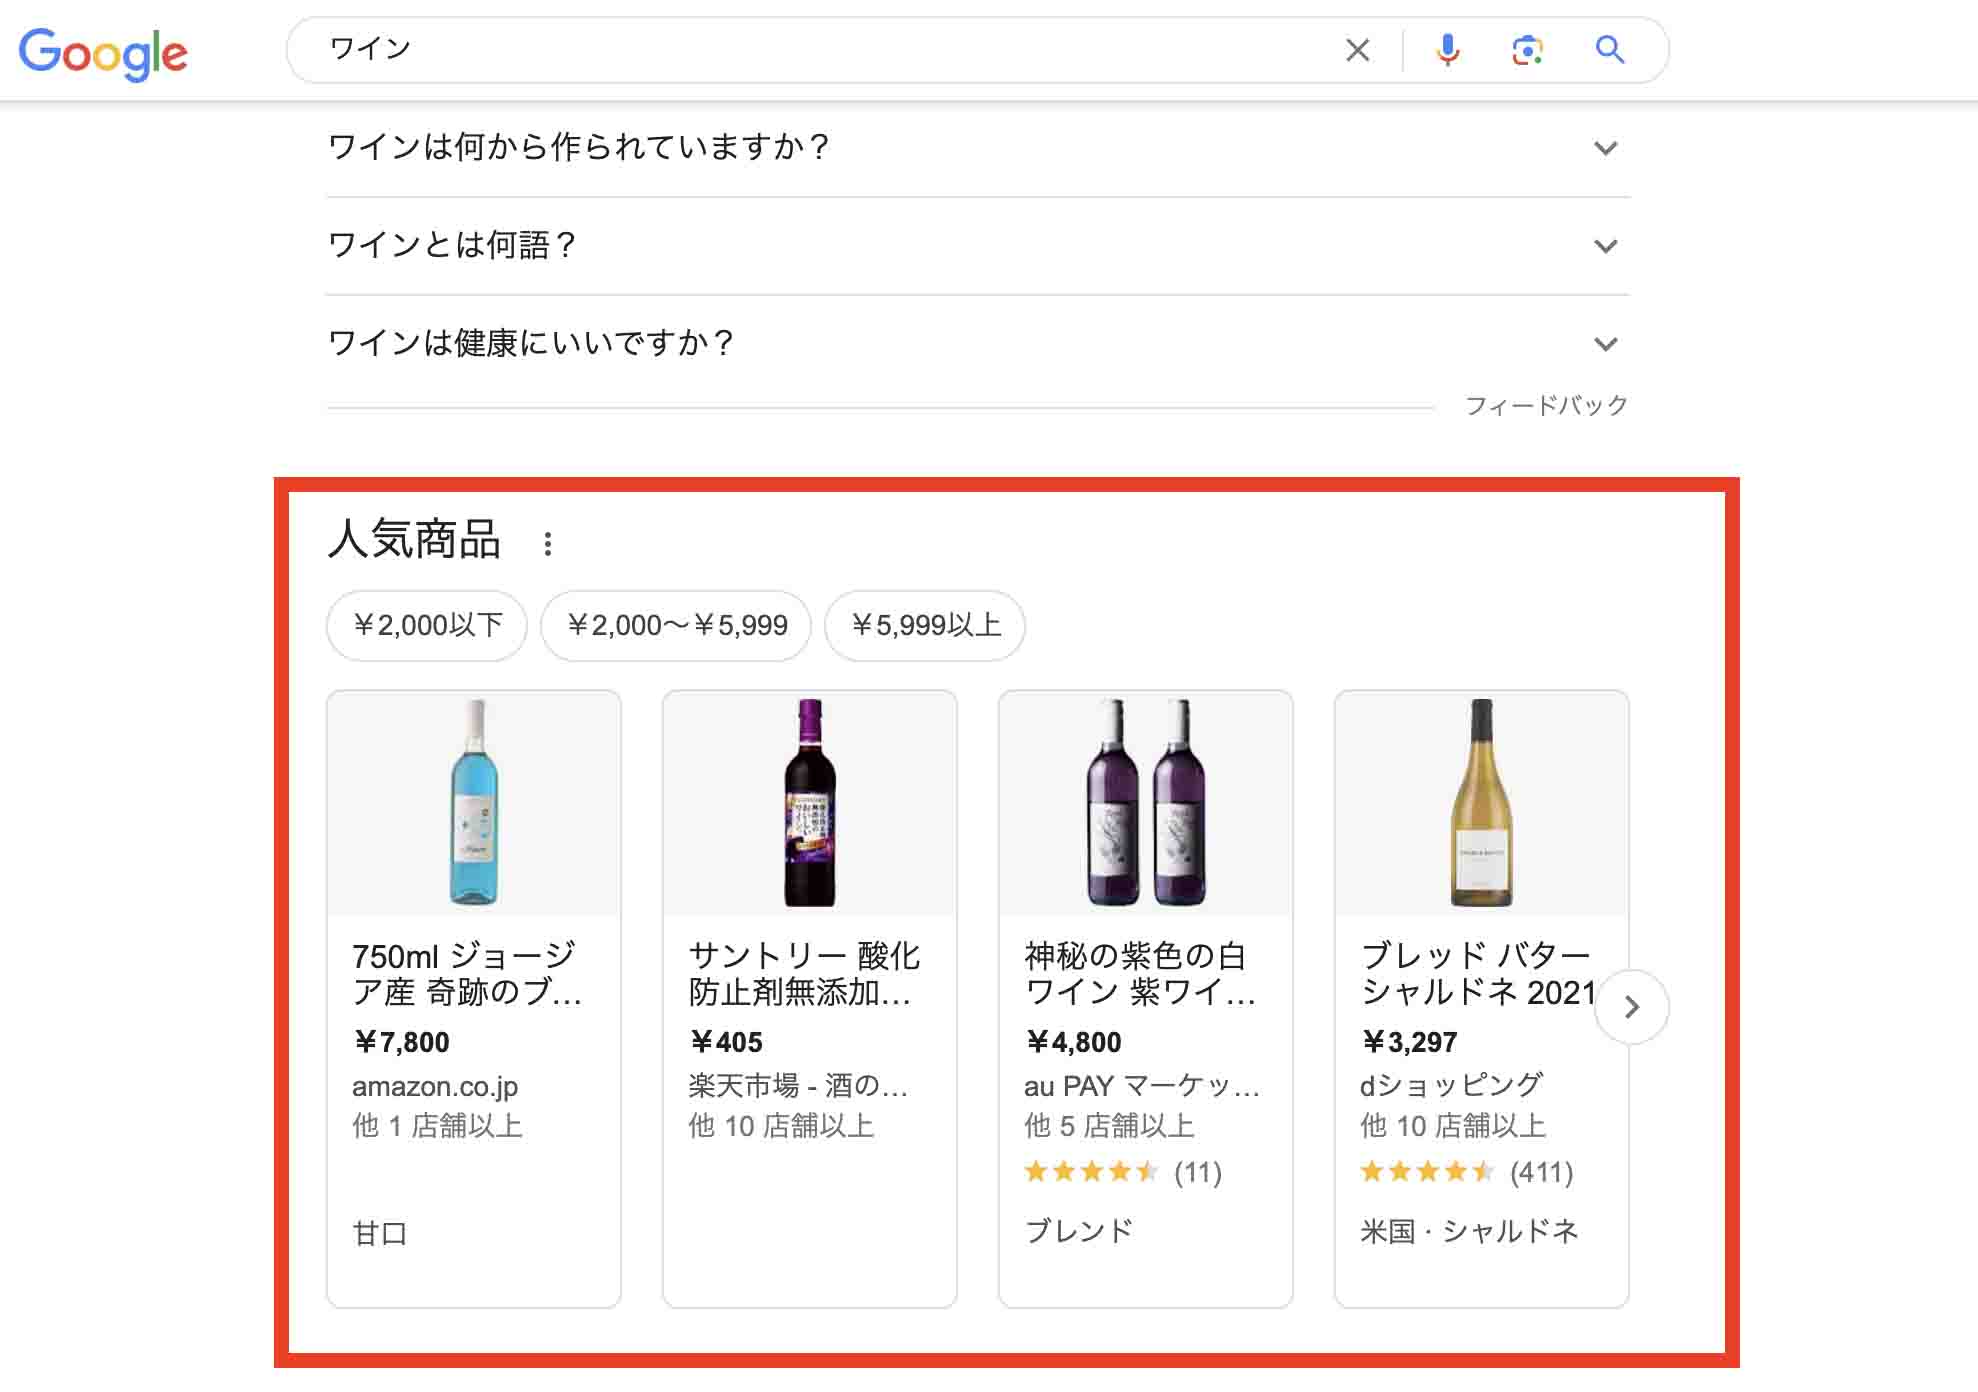 「ワイン」と検索し、各ECサイトの商品ページが画像付きで表示されるGoogle検索画面キャプチャ